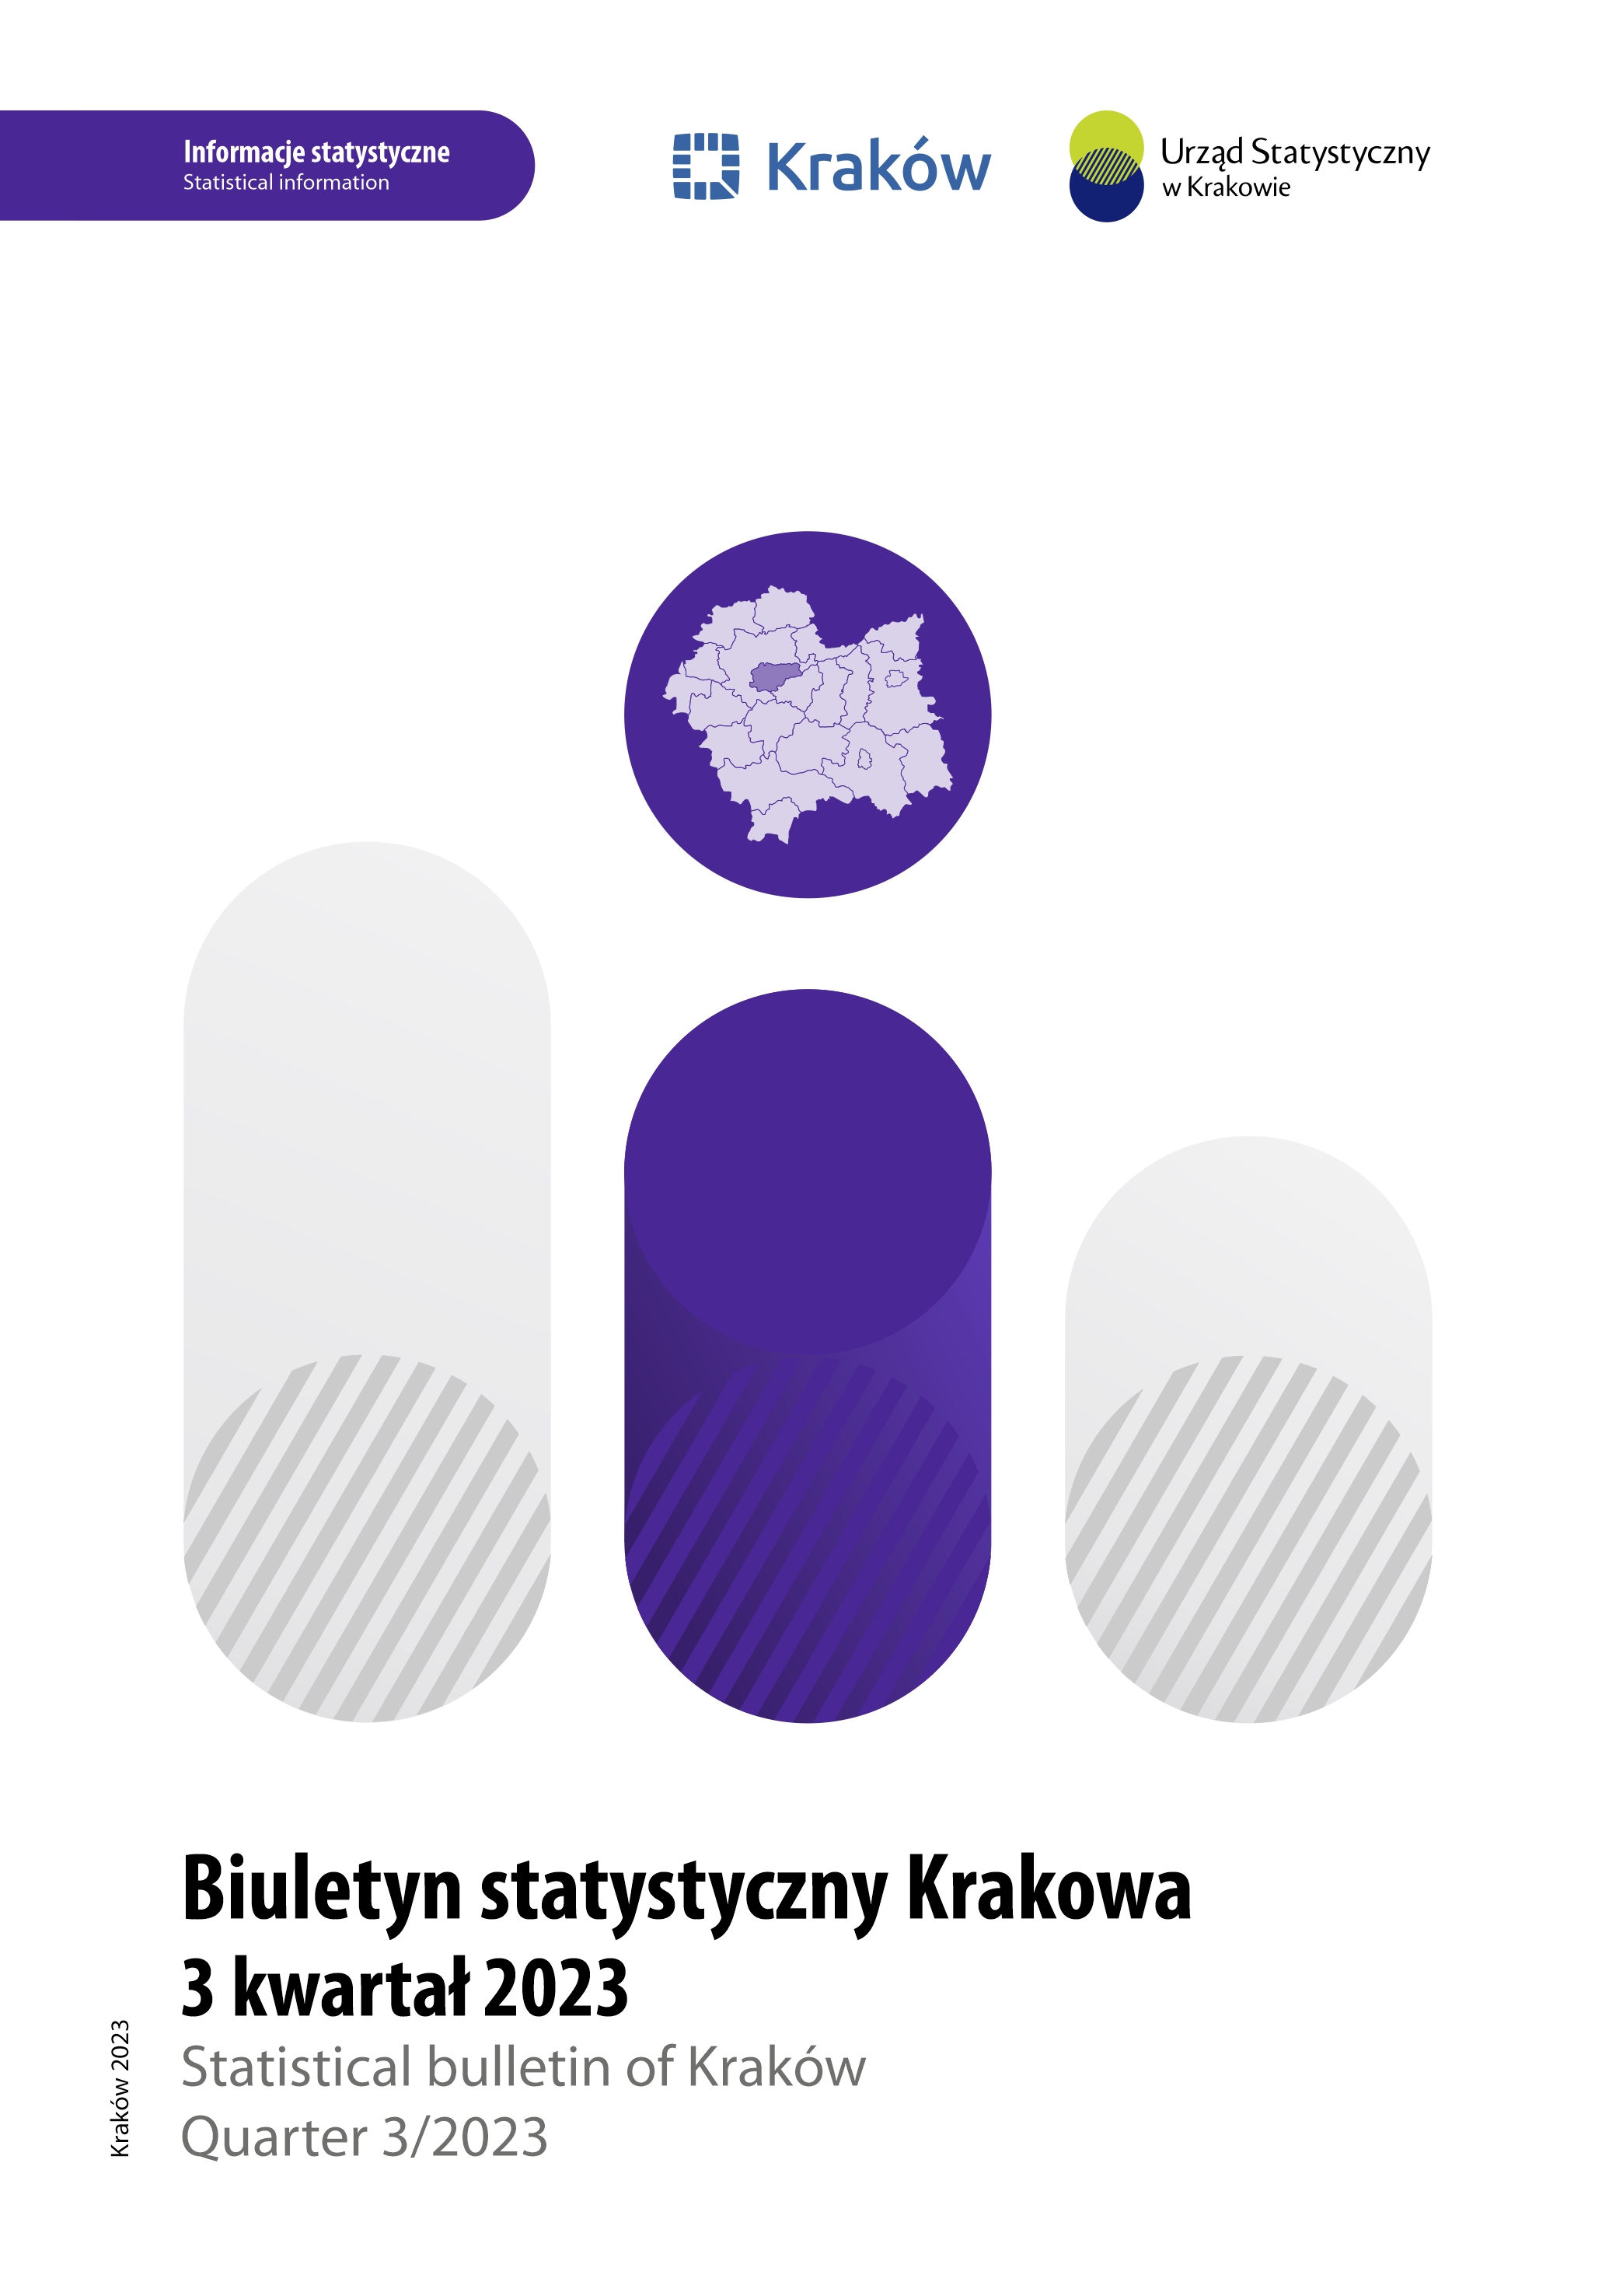 Okładka Biuletynu Statystycznego Miasta Krakowa za III kwartał 2023 roku